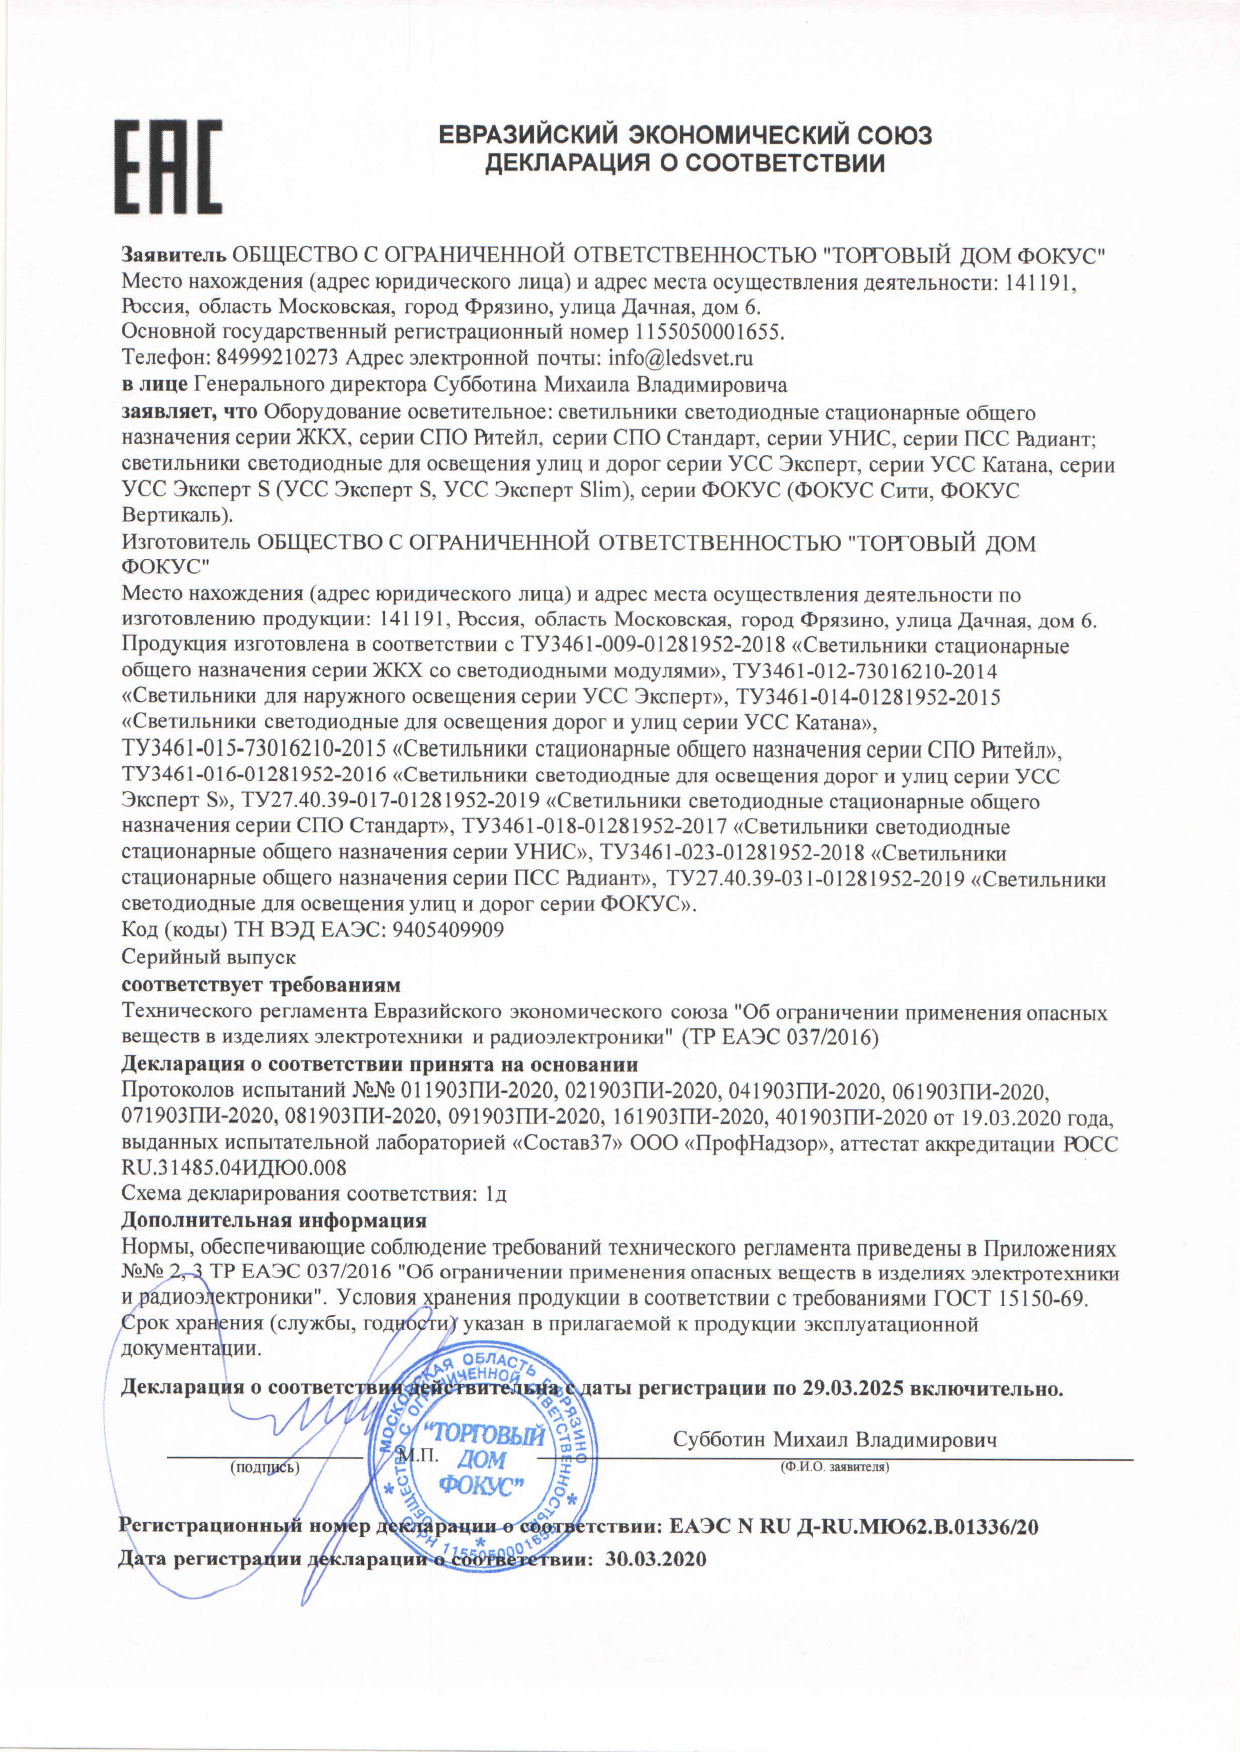 declaratsiya-sootvetstvia-zhkh-unis-pss-radiant-katana-ekspert-s.pdf